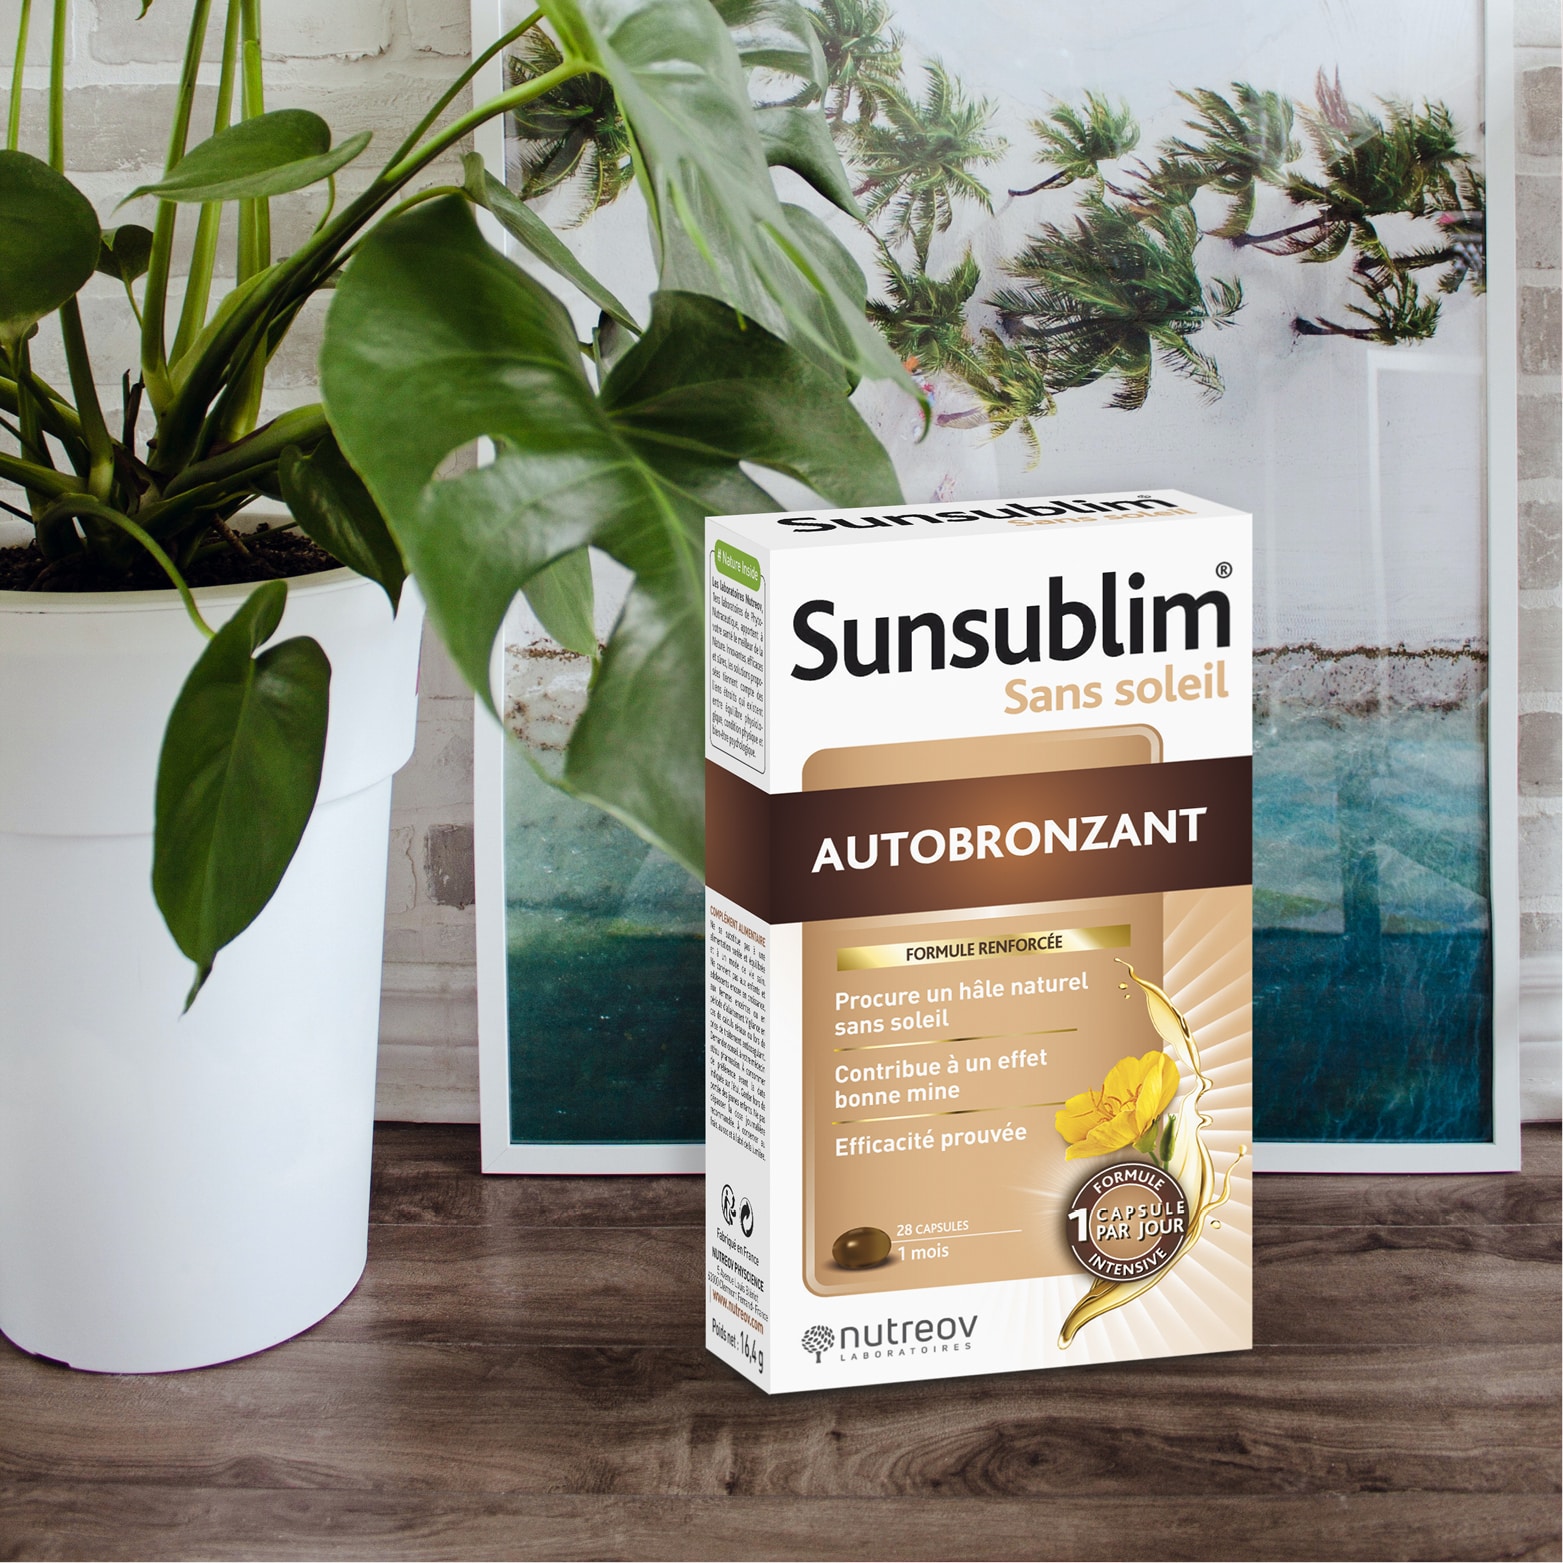 Sunsublim® Sans soleil Autobronzant